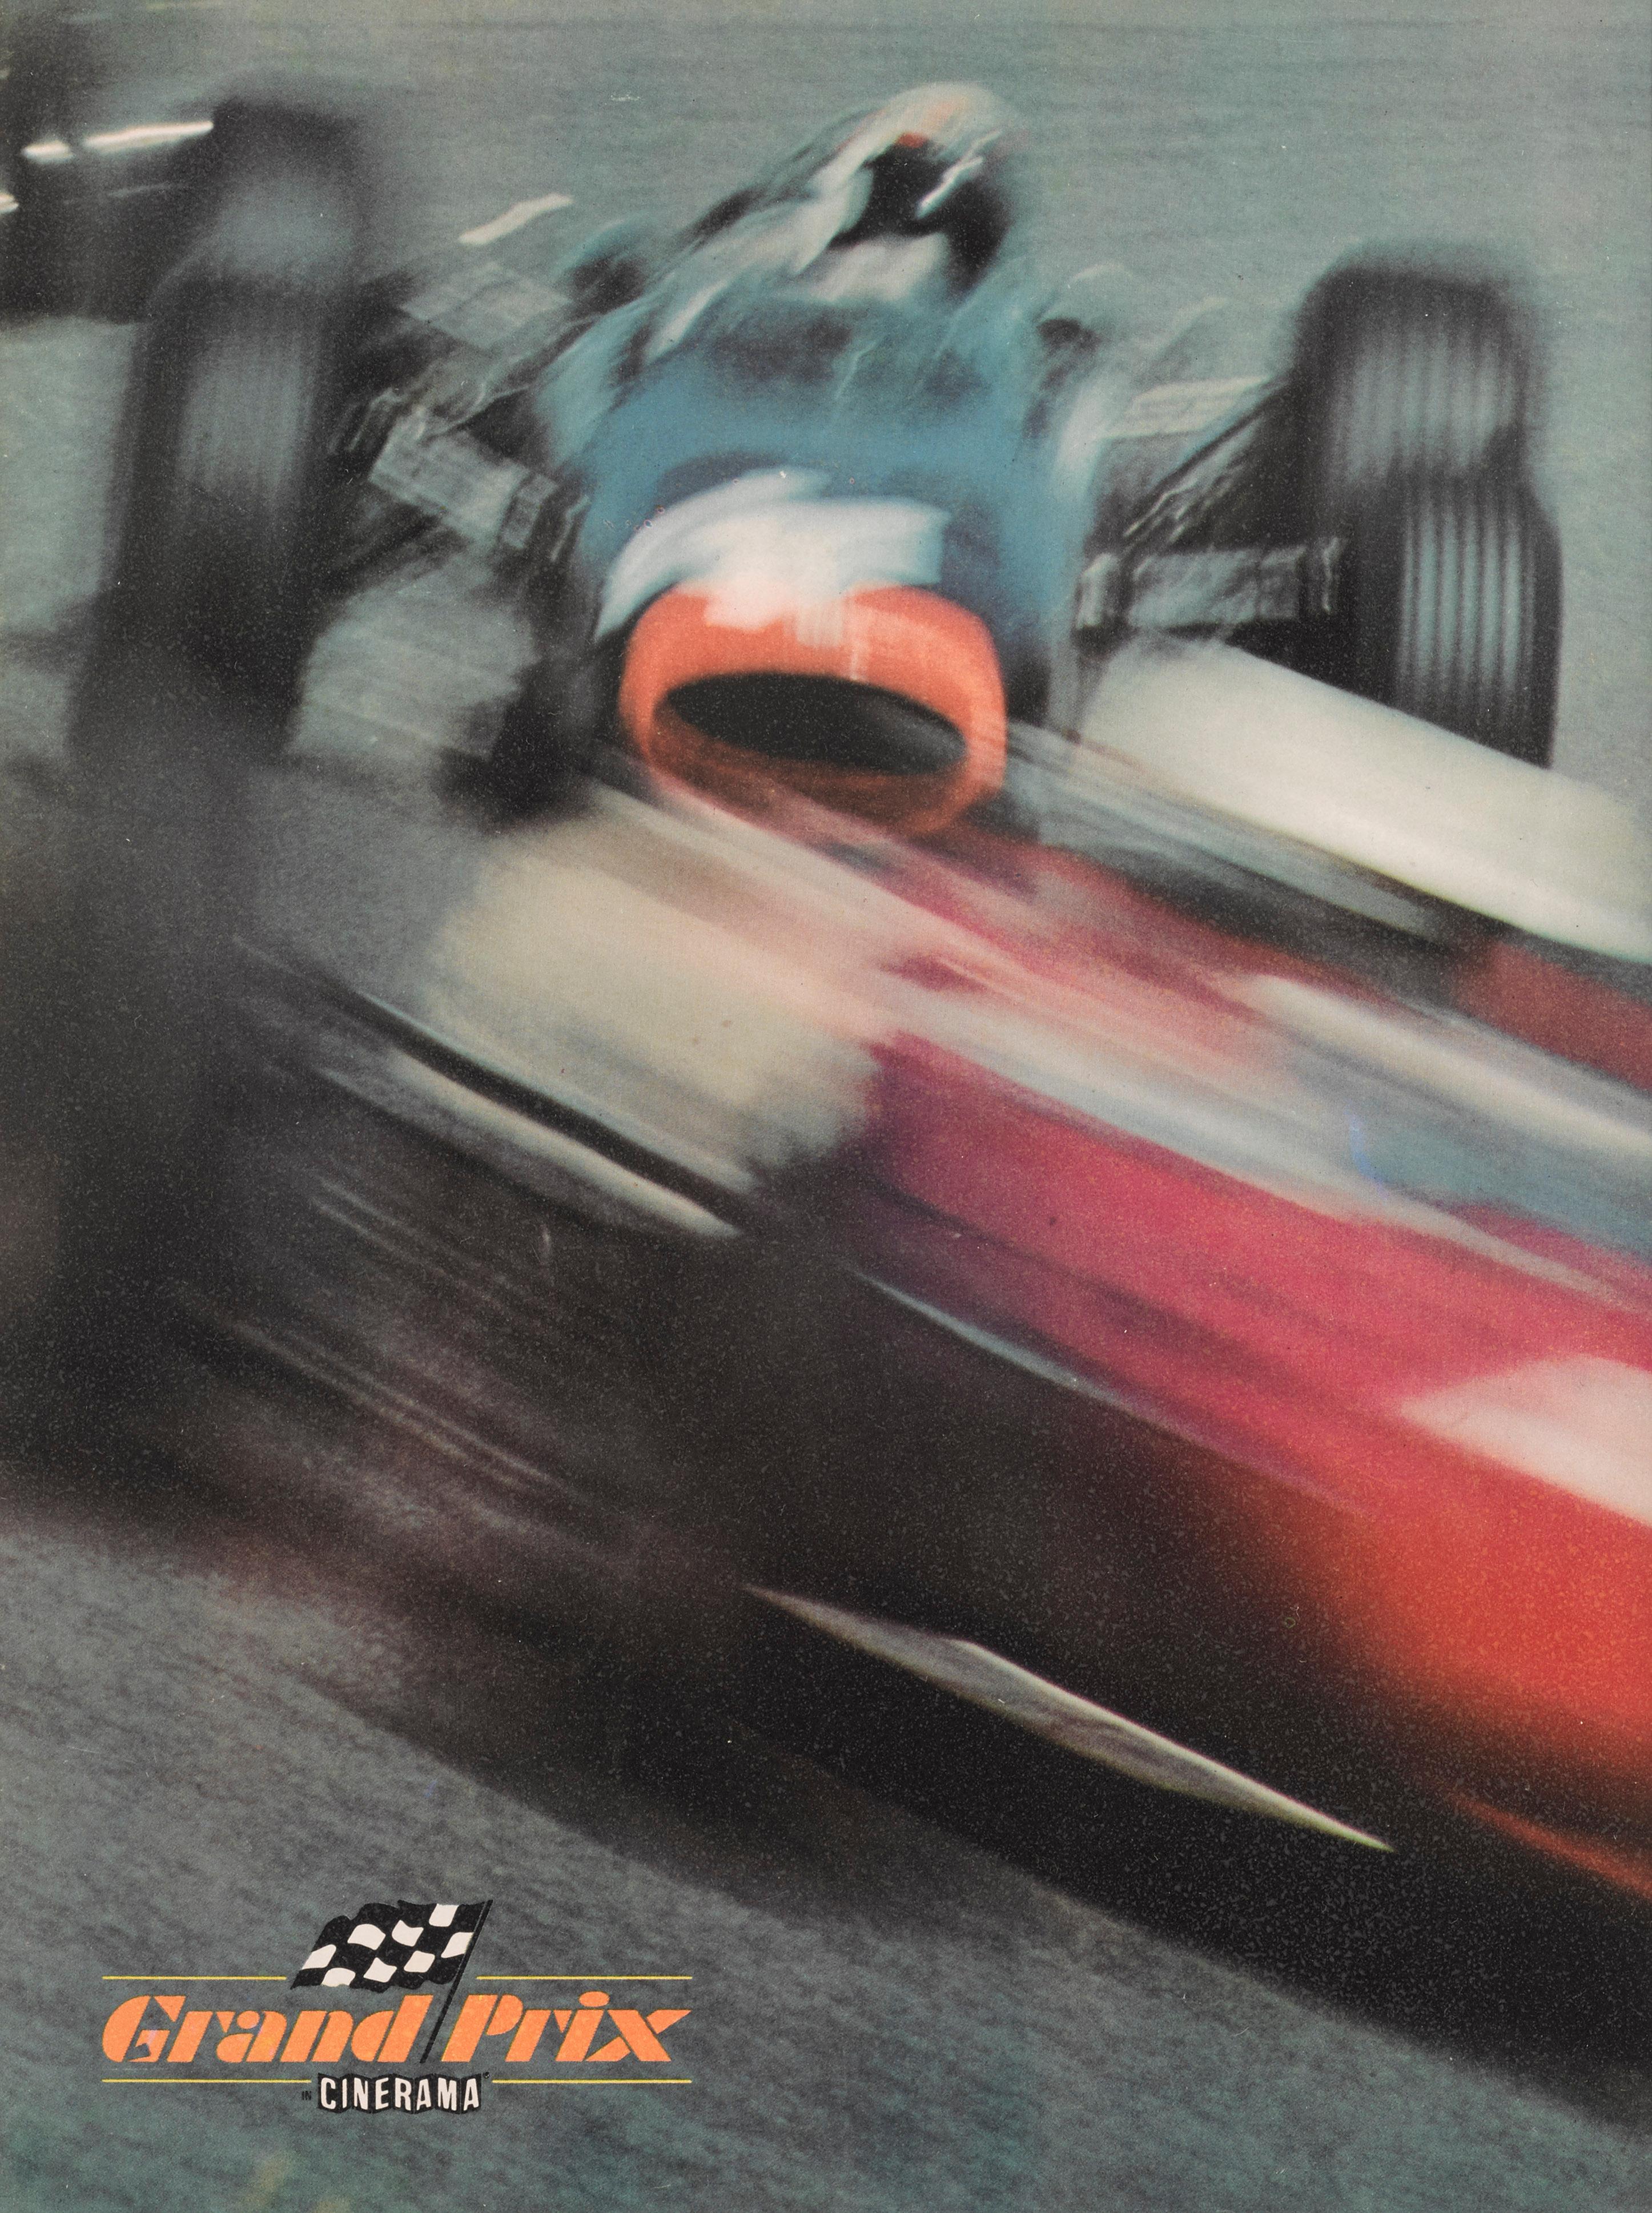 Couverture originale du programme souvenir du Cinerama britannique.
Ce film de fiction sur les courses automobiles raconte l'histoire de la saison 1966 de Formule 1 à travers les yeux de quatre pilotes de Formule 1. Le film comprend des séquences